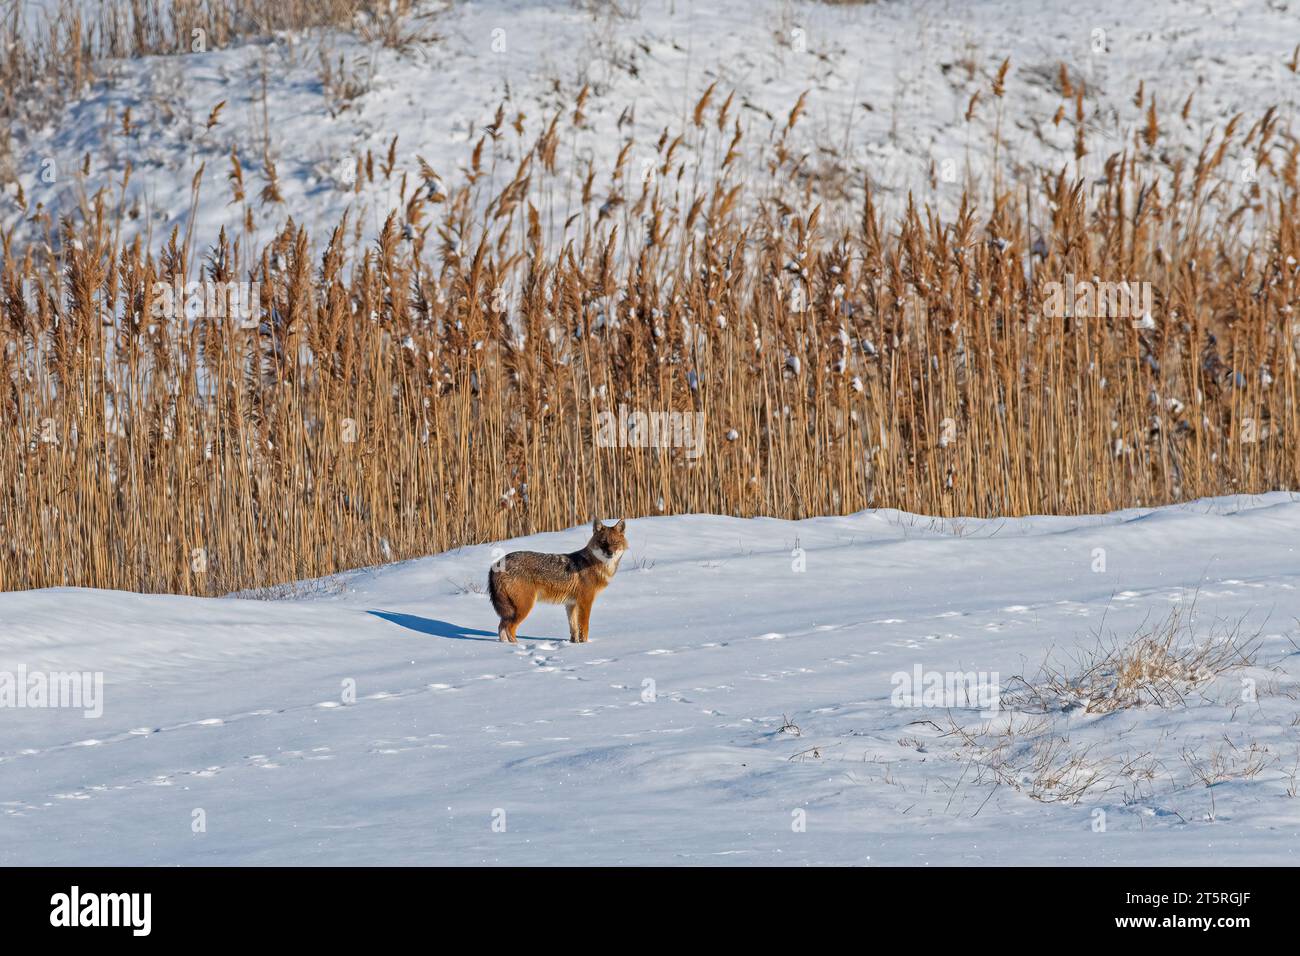 Goldener Jackal (Canis aureus) im Schnee spazieren. Trockene Schilfe im Hintergrund. Stockfoto